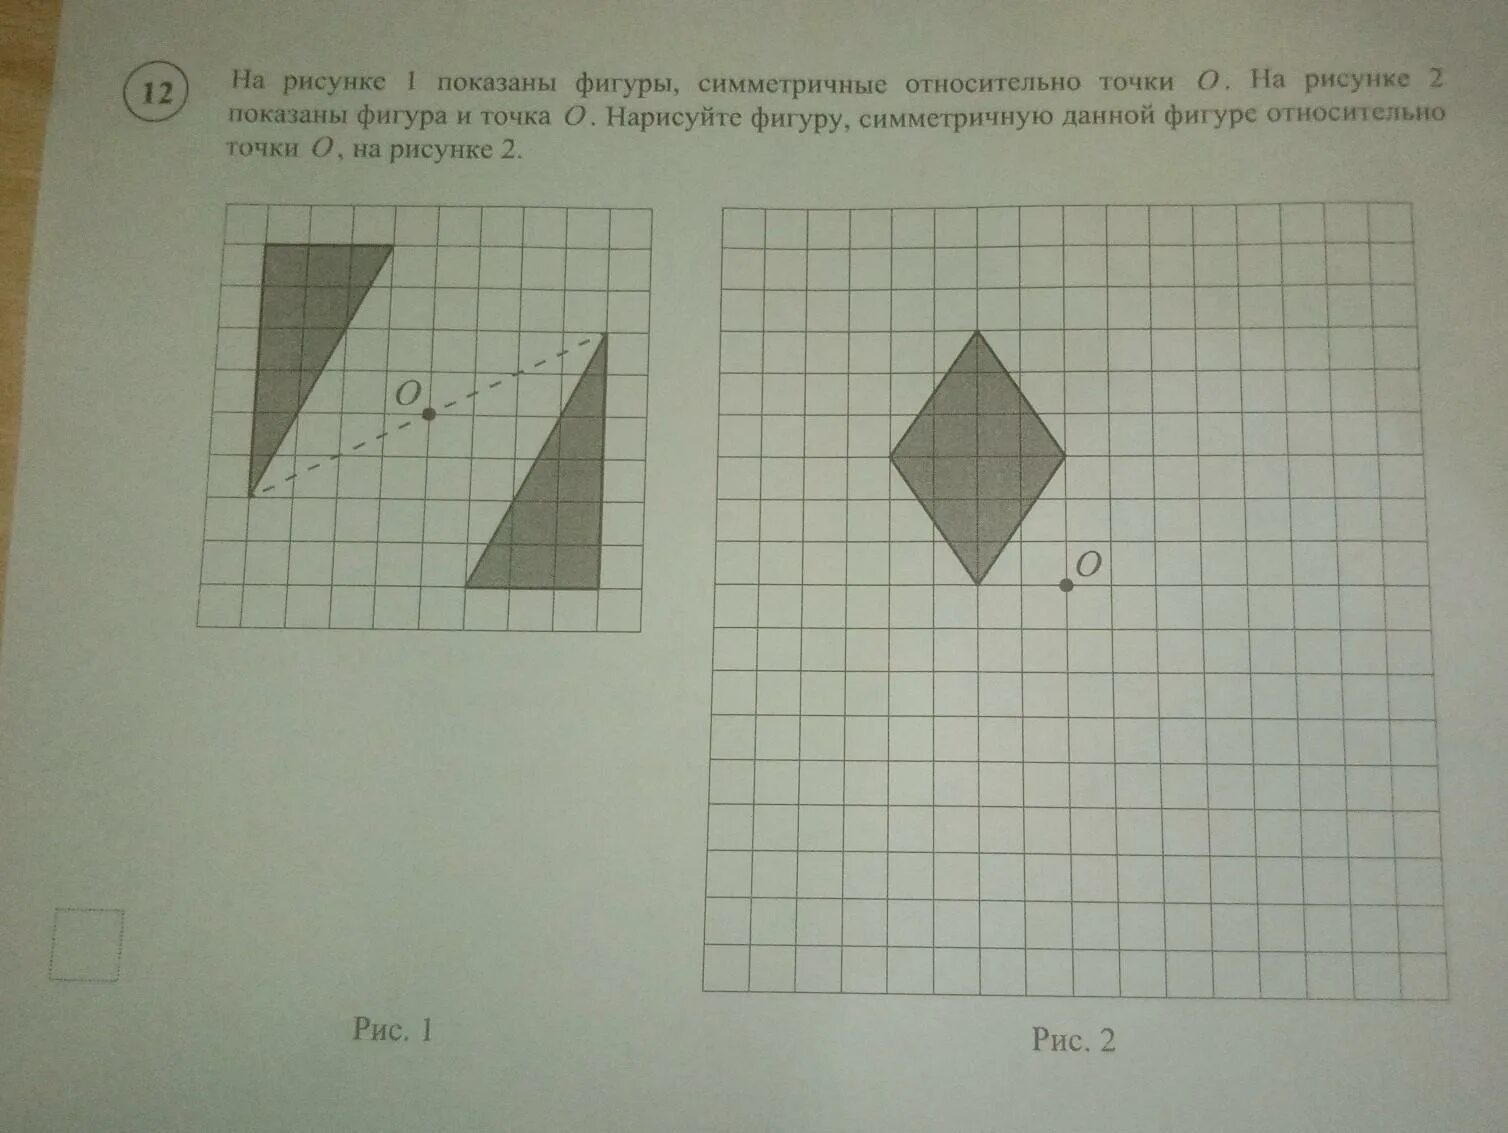 На рисунке показаны фигуры симметричные точки о. Нарисуйте фигуру симметричную данной относительно точки о. На рисунке 1 показаны фигуры, симметричные относительно. Нарисуйте симметричную фигуру относительно точки о. Симметричные фигуры к точка 0.